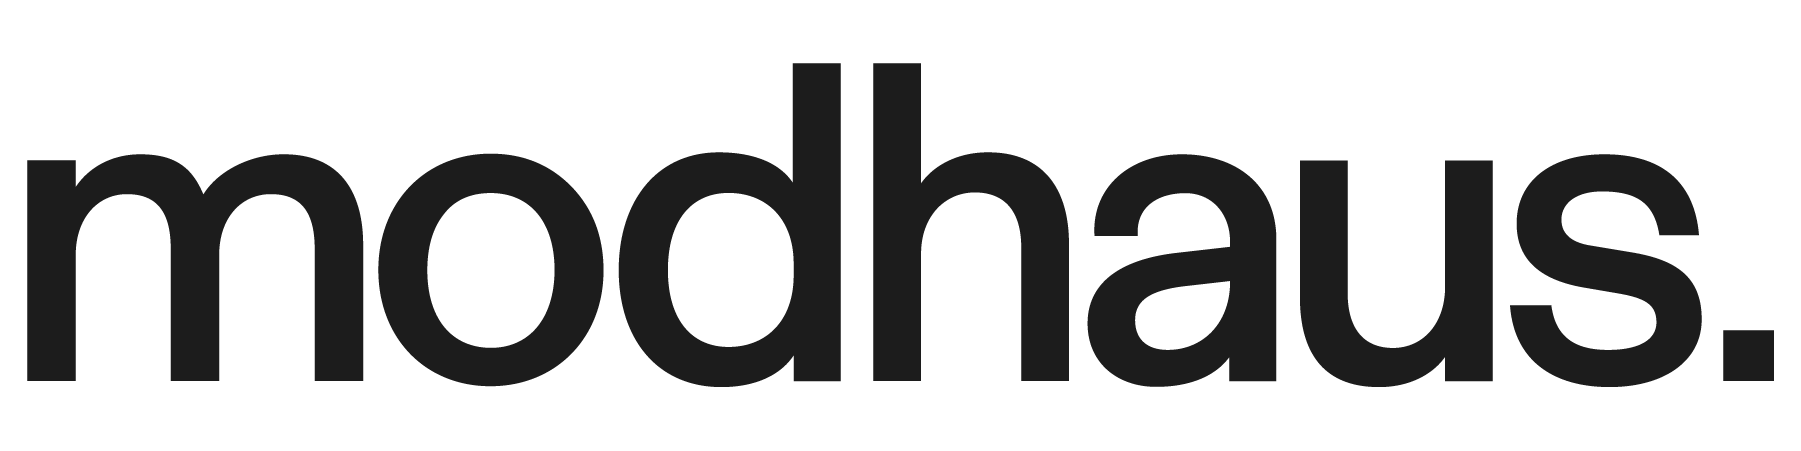 Modhaus wordmark logo